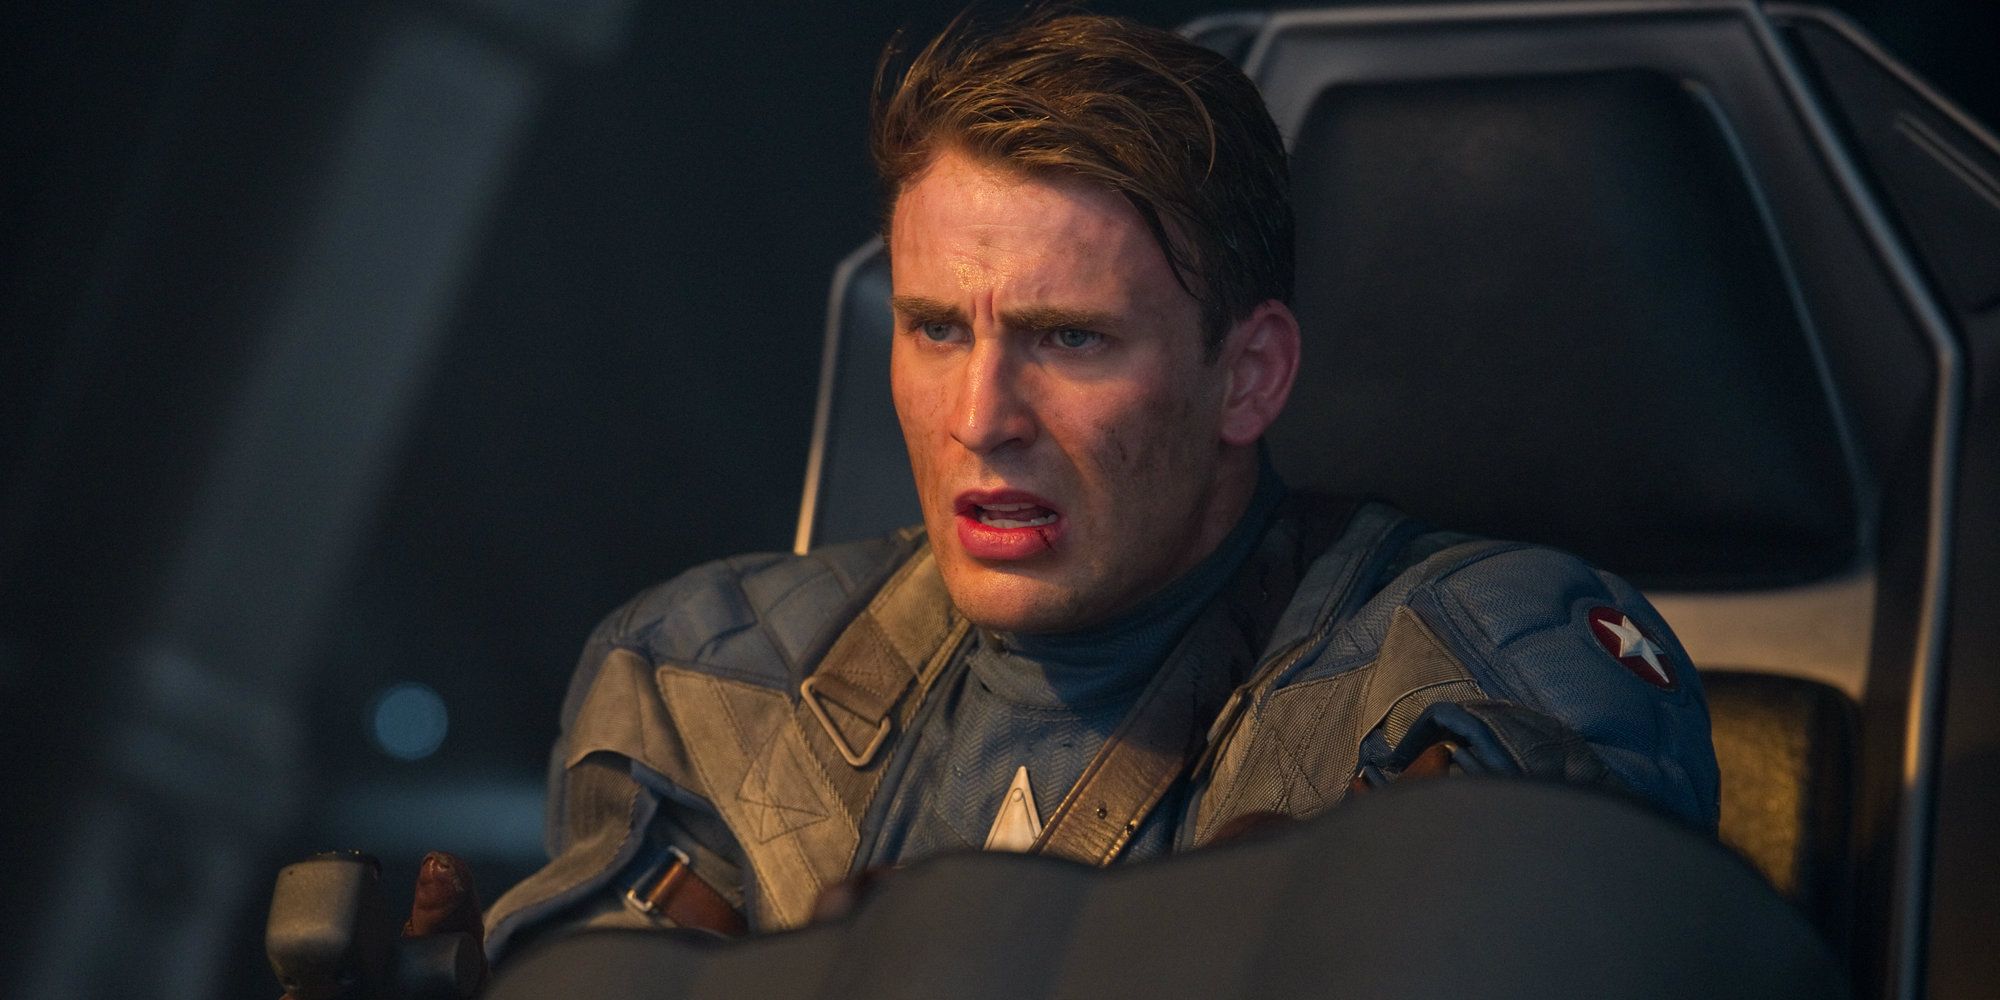 Chris Evans in Captain America The First Avenger